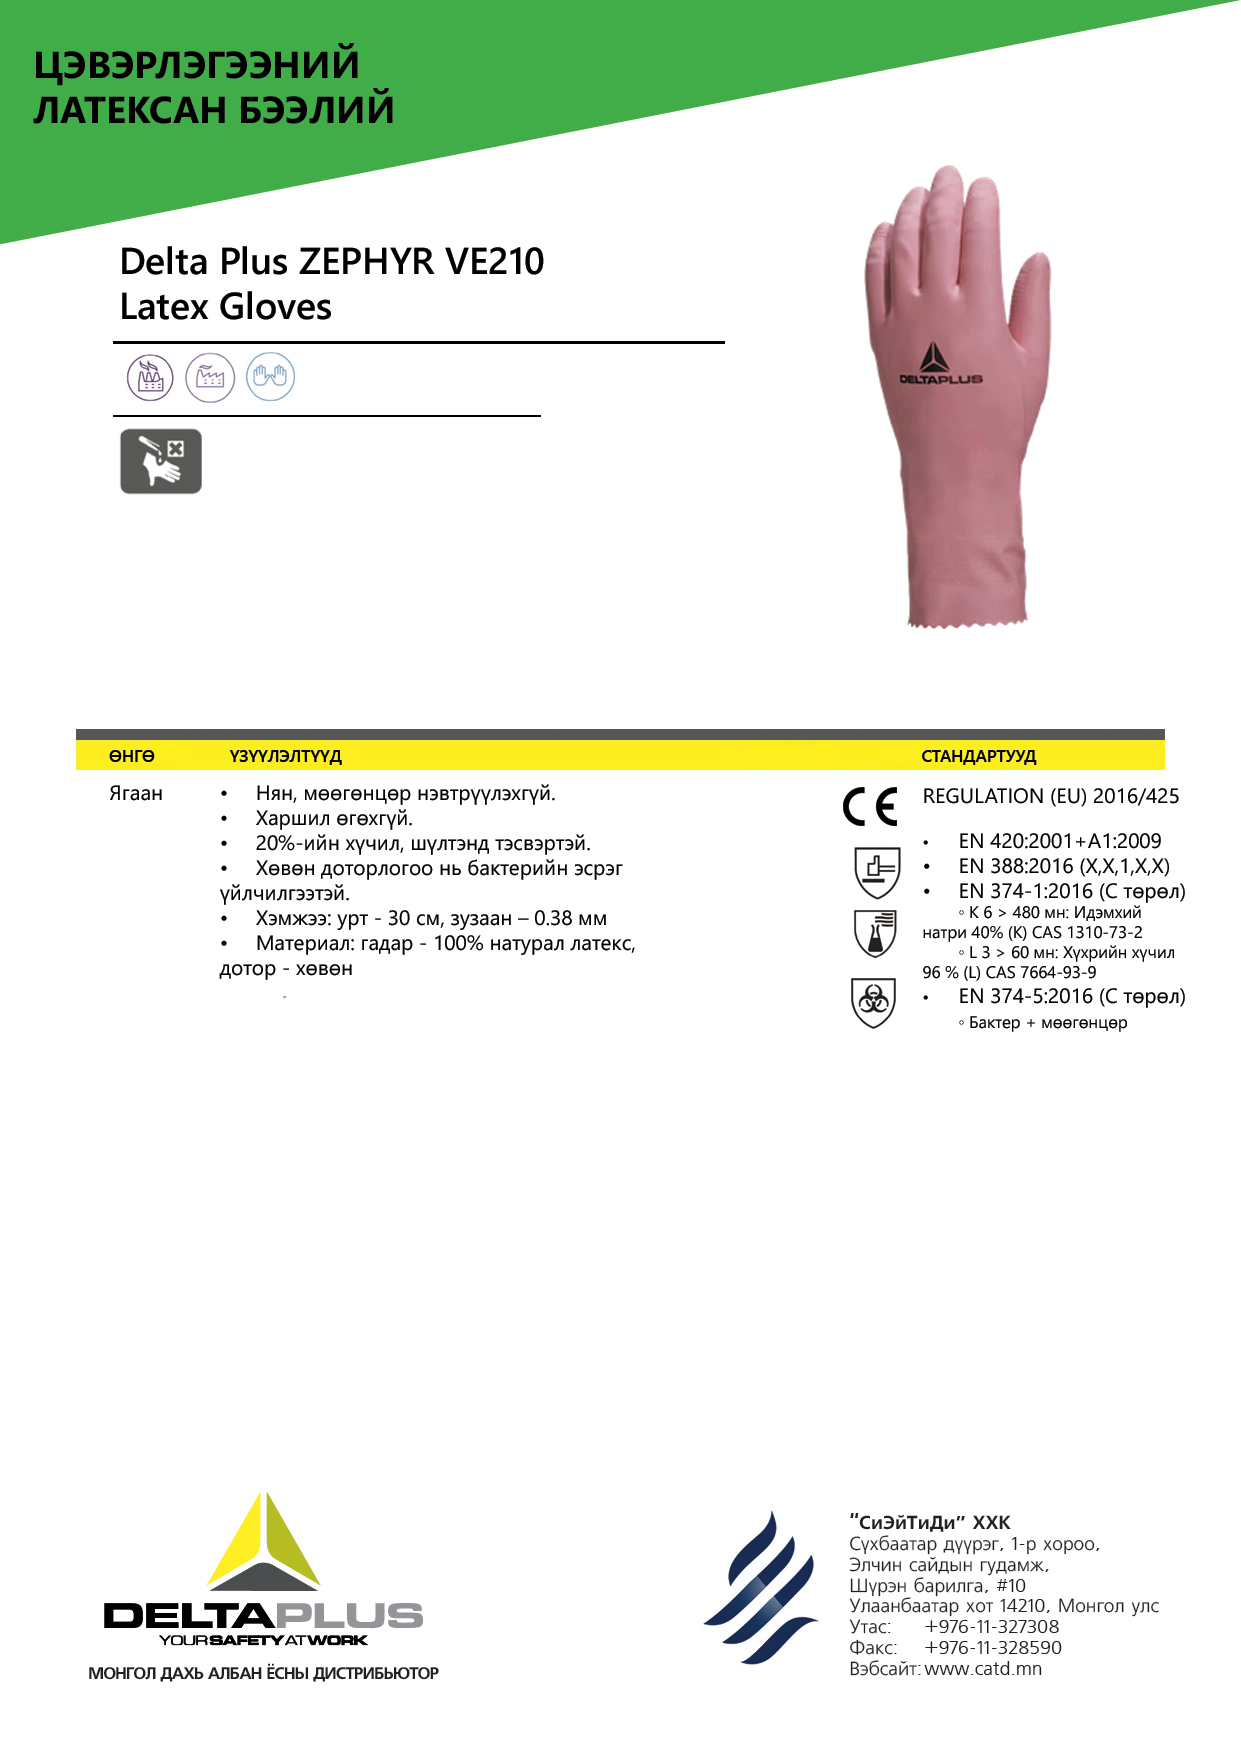 Резинэн бээлий - DELTA PLUS | бээлий, хабэа, gloves, ppe | Си Эй Ти Ди ХХК